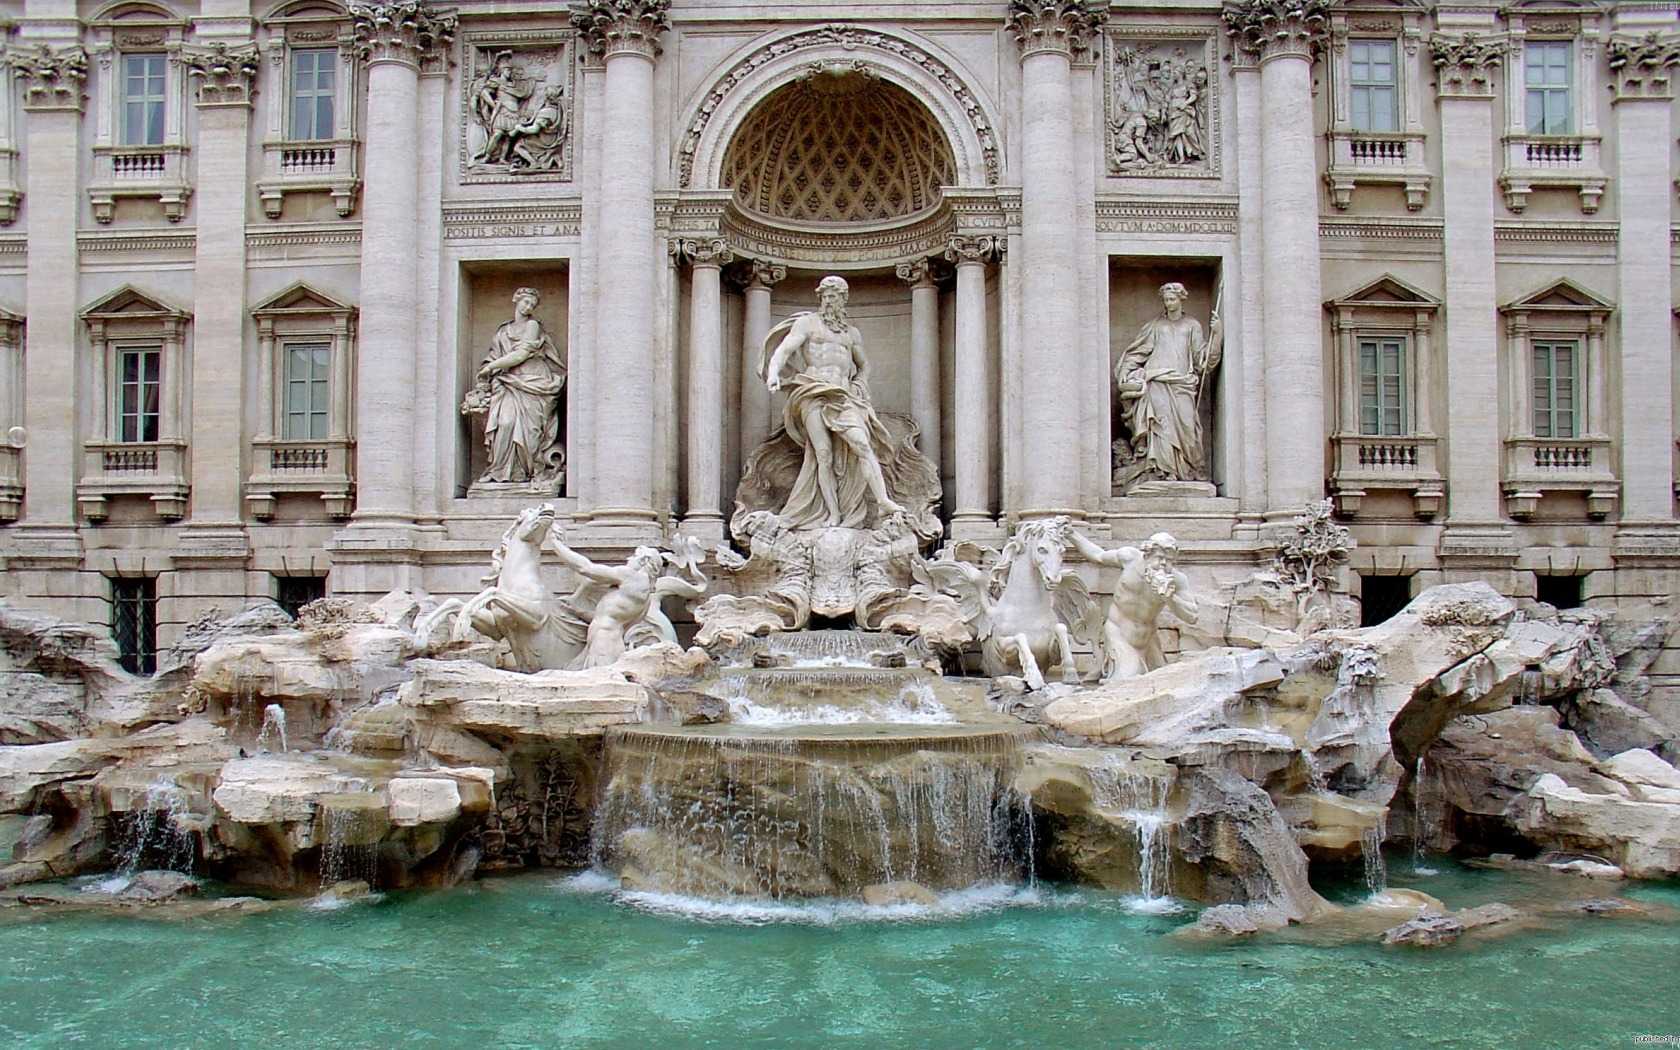 Фонтан ди Треви, расположенный в итальянском городе Риме, считается архитектурной жемчужиной, самым крупным и знаменитым фонтаном Рима Вокруг фонтана Треви ходят интересные поверья Одно, из которых гласит что человек, повернувшийся к фонтану спиной и